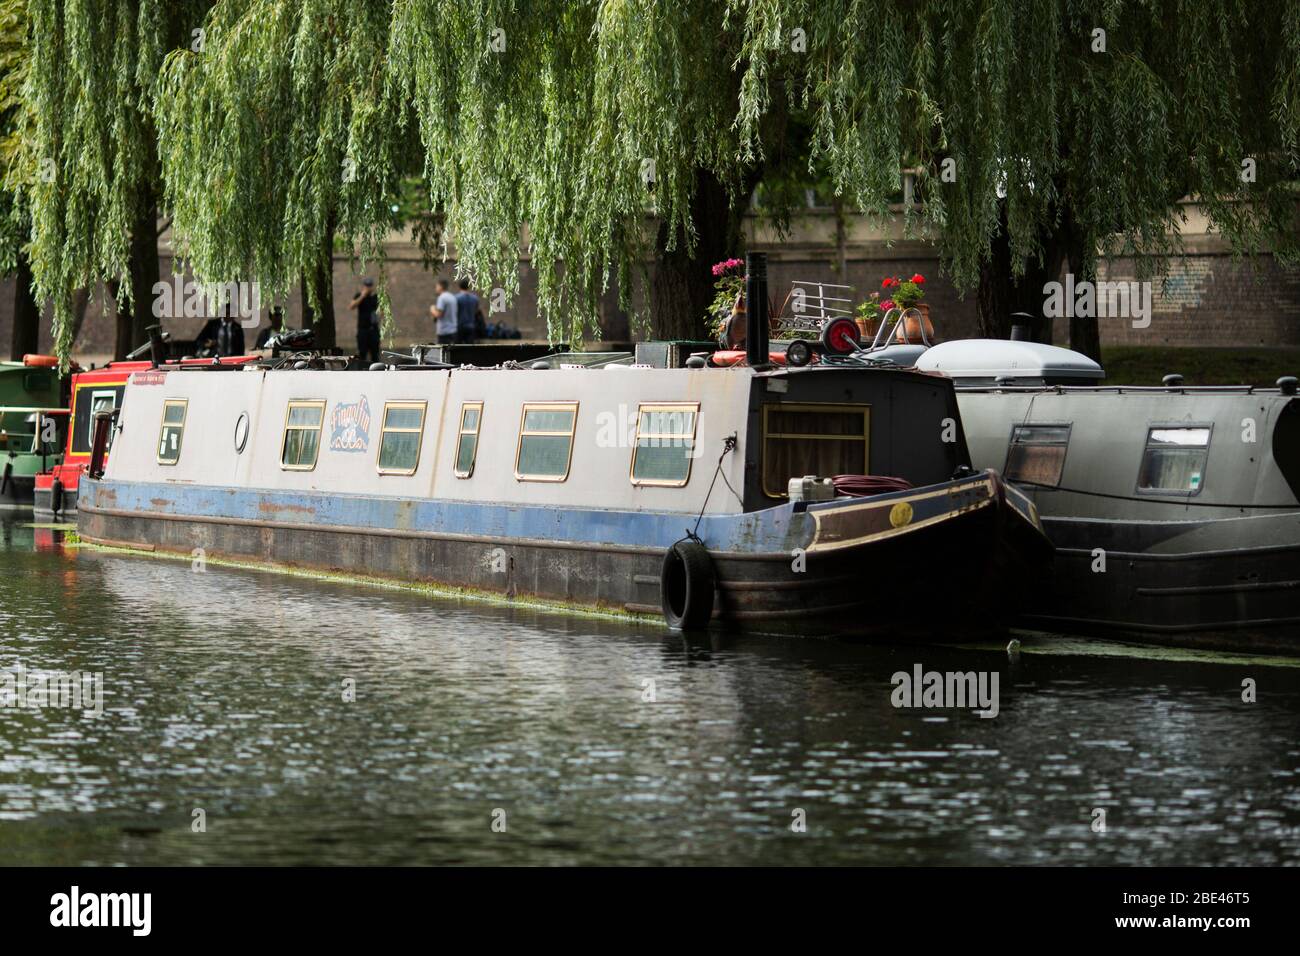 Une maison en bateau amarrée sur le canal dans le quartier de Little Venice à Londres, Angleterre, Royaume-Uni. Banque D'Images